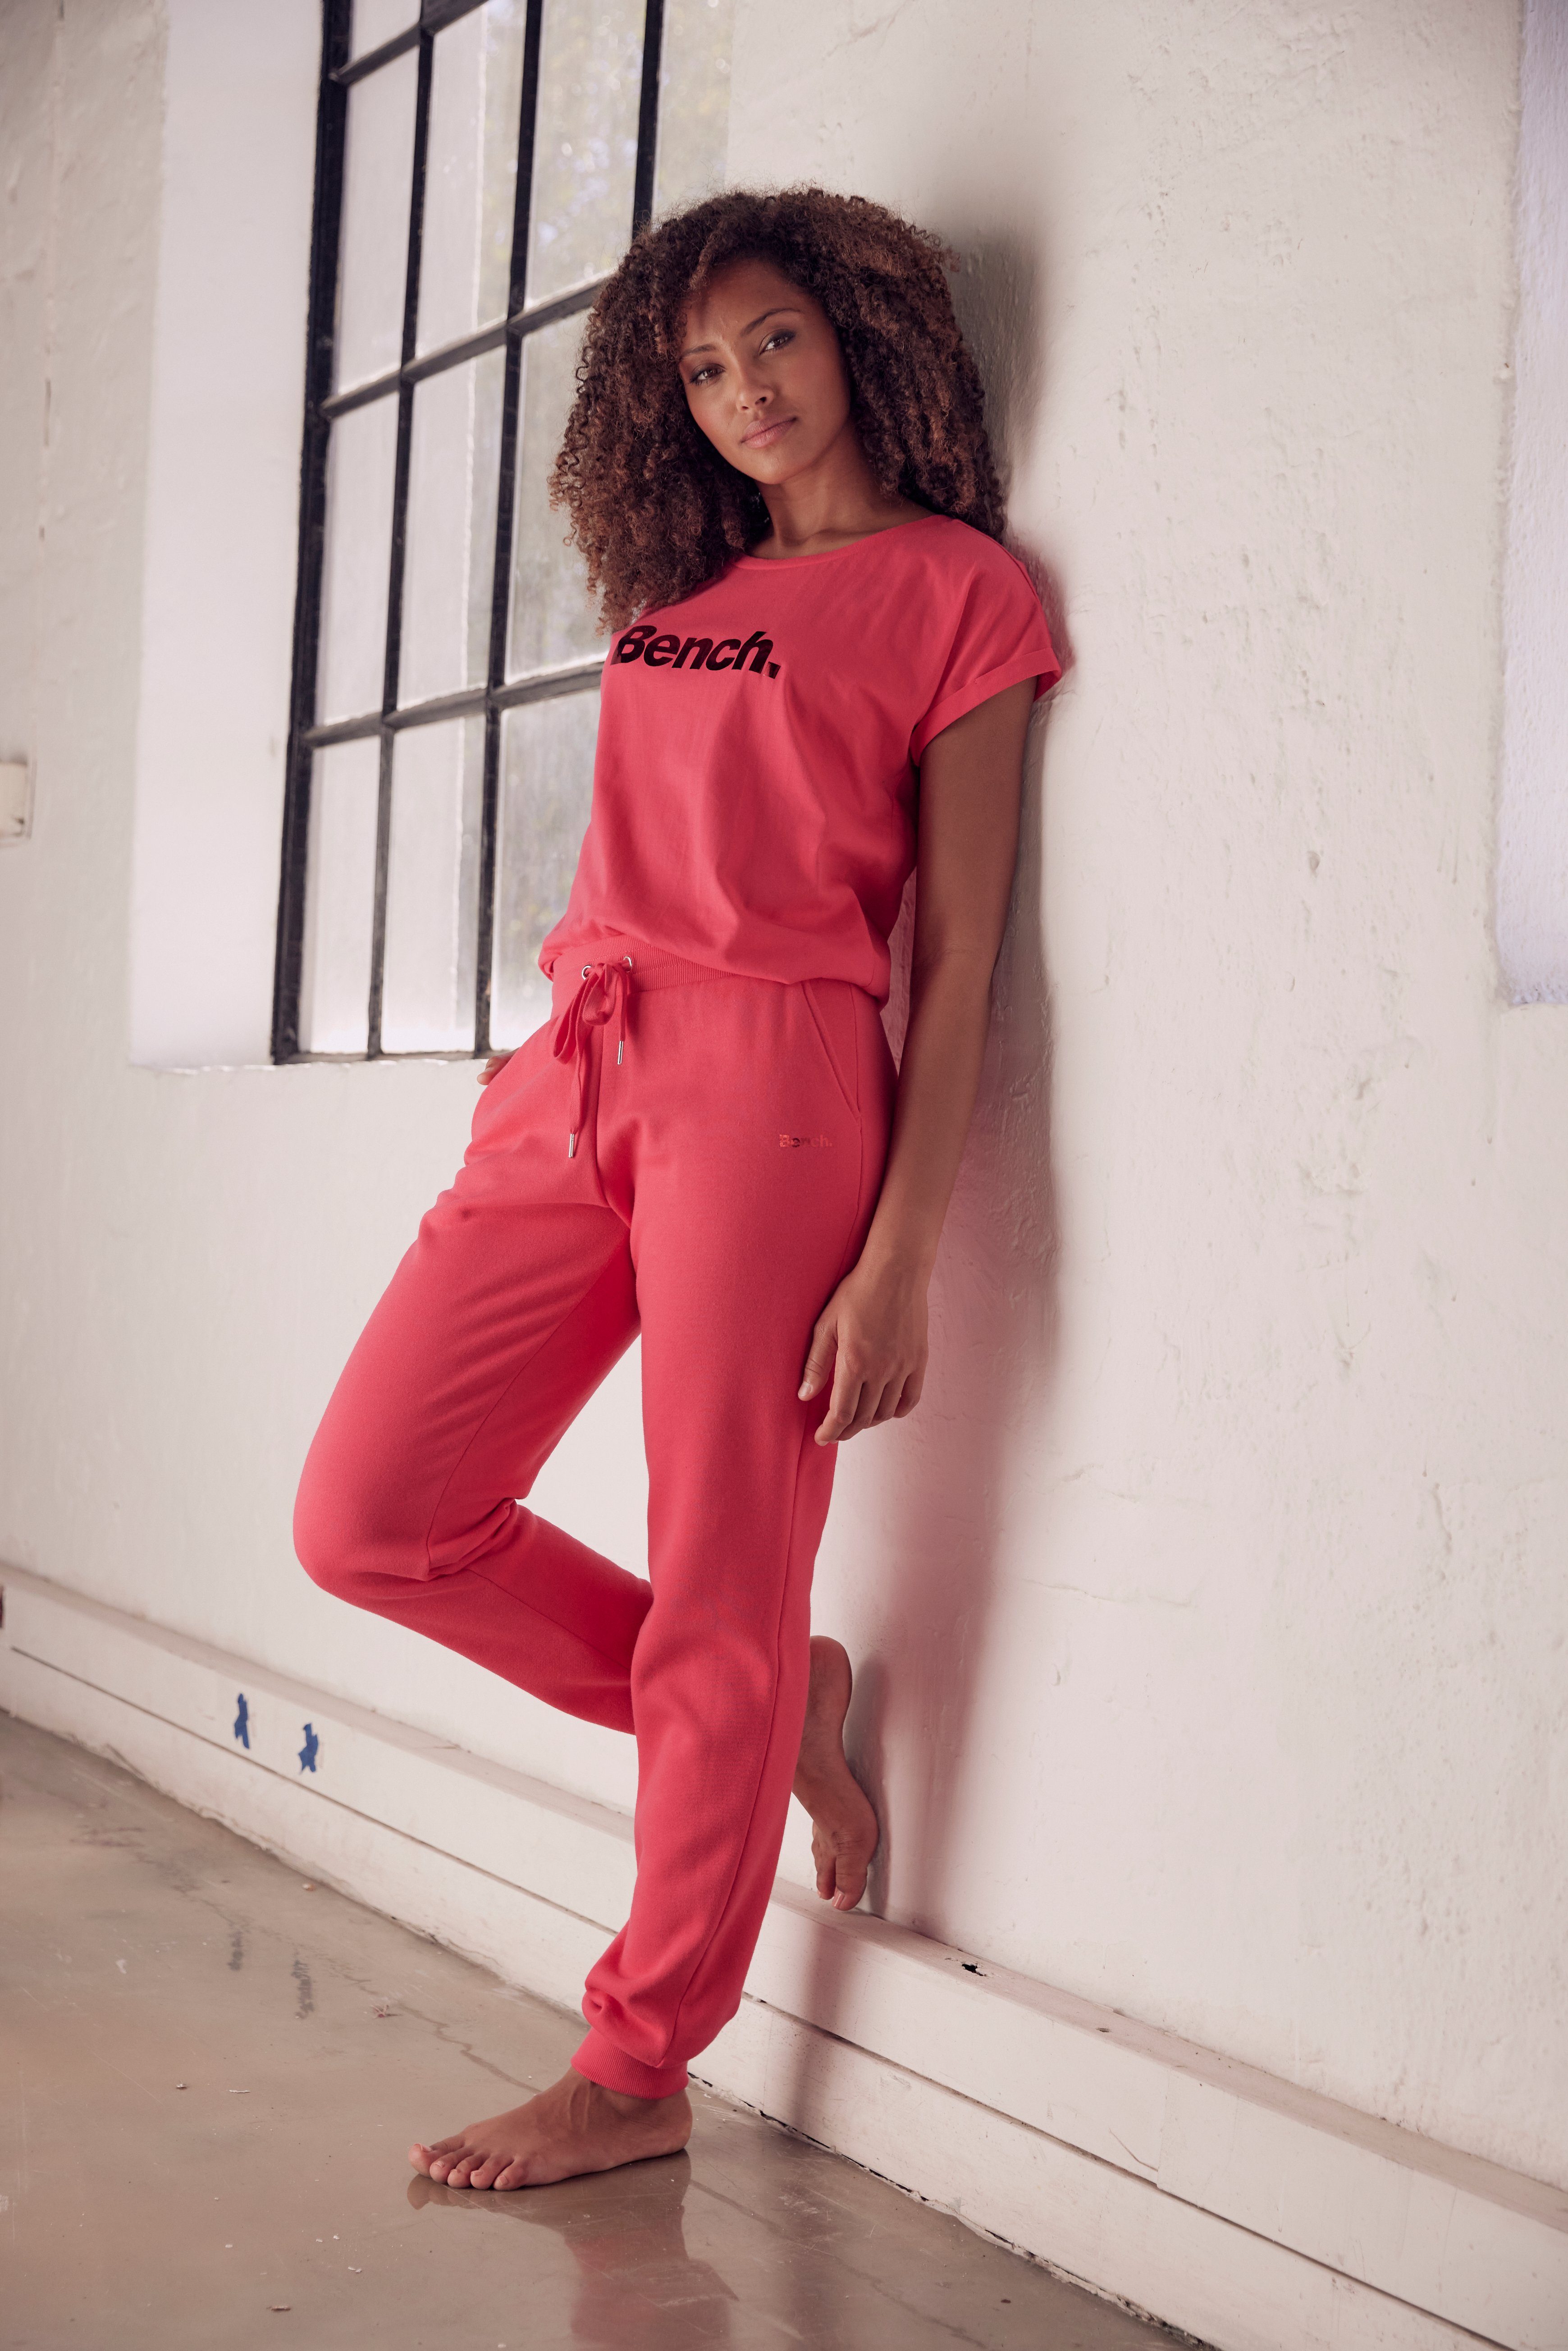 Loungeshirt pink glänzendem -Kurzarmshirt, T-Shirt Loungewear mit Logodruck, Loungewear Bench.